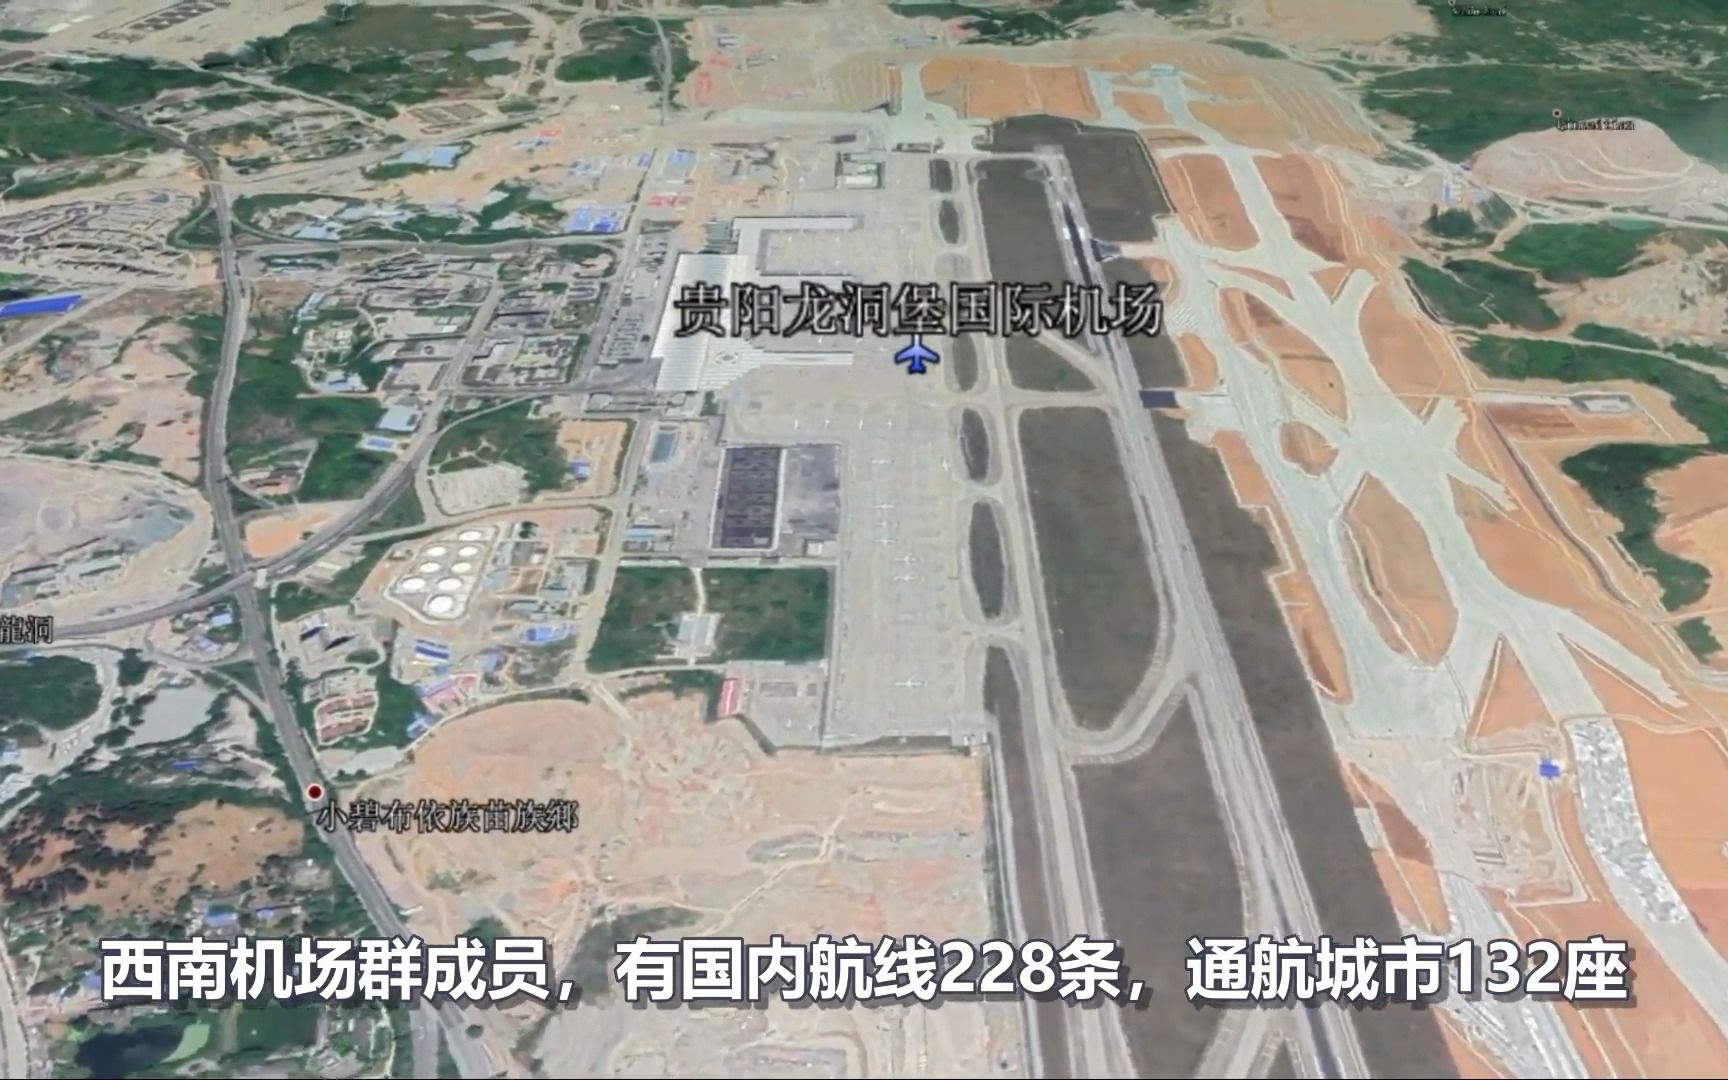 贵州5大机场,其实客流量并不高,你认为哪个建设最漂亮呢?